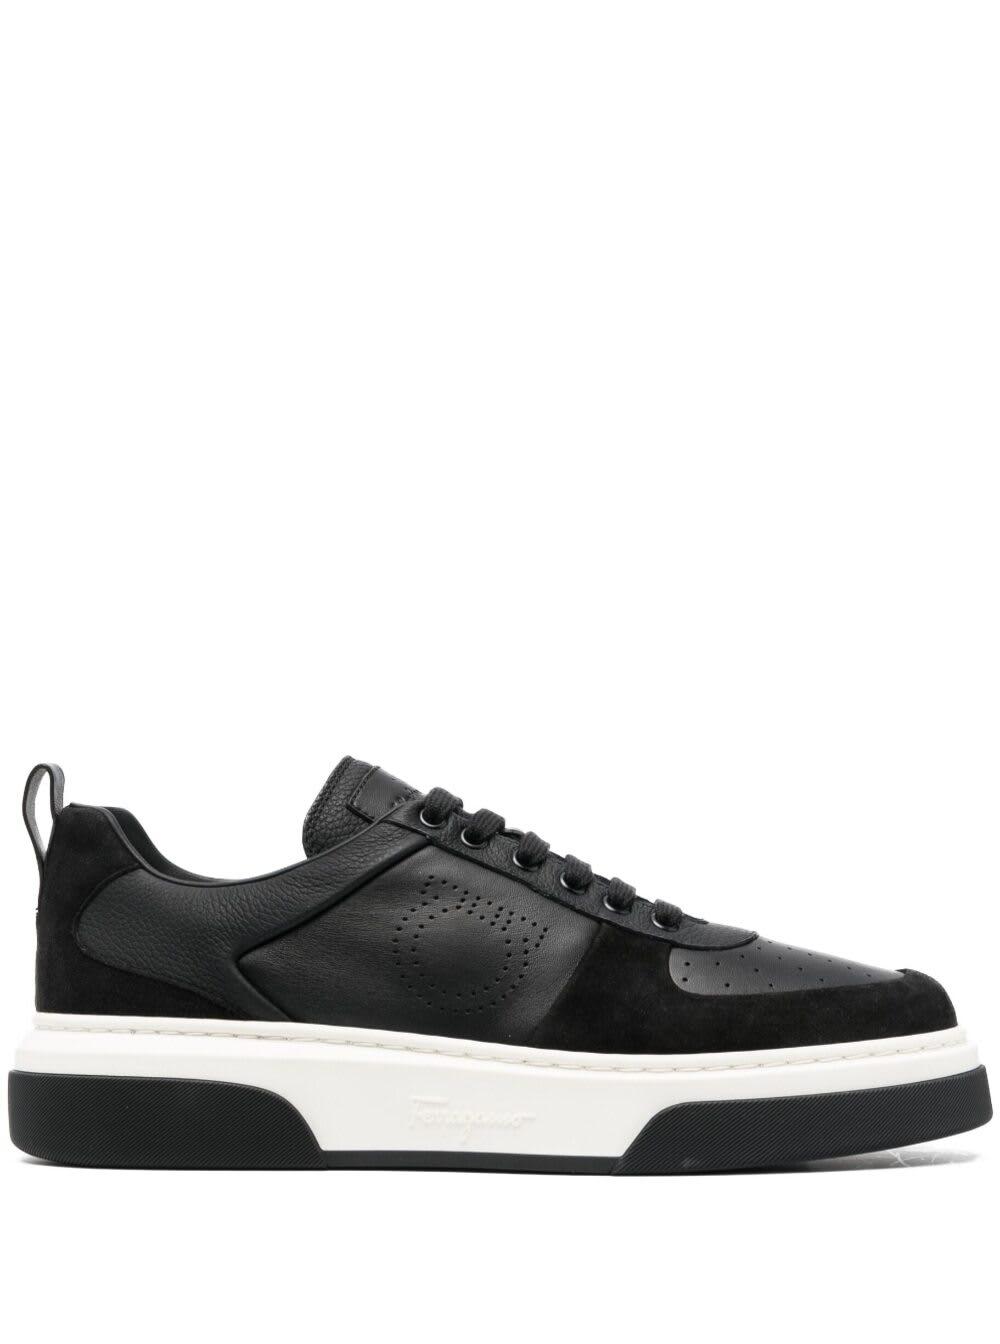 Ferragamo Cassina Low Sneakers Shoes in Black for Men | Lyst